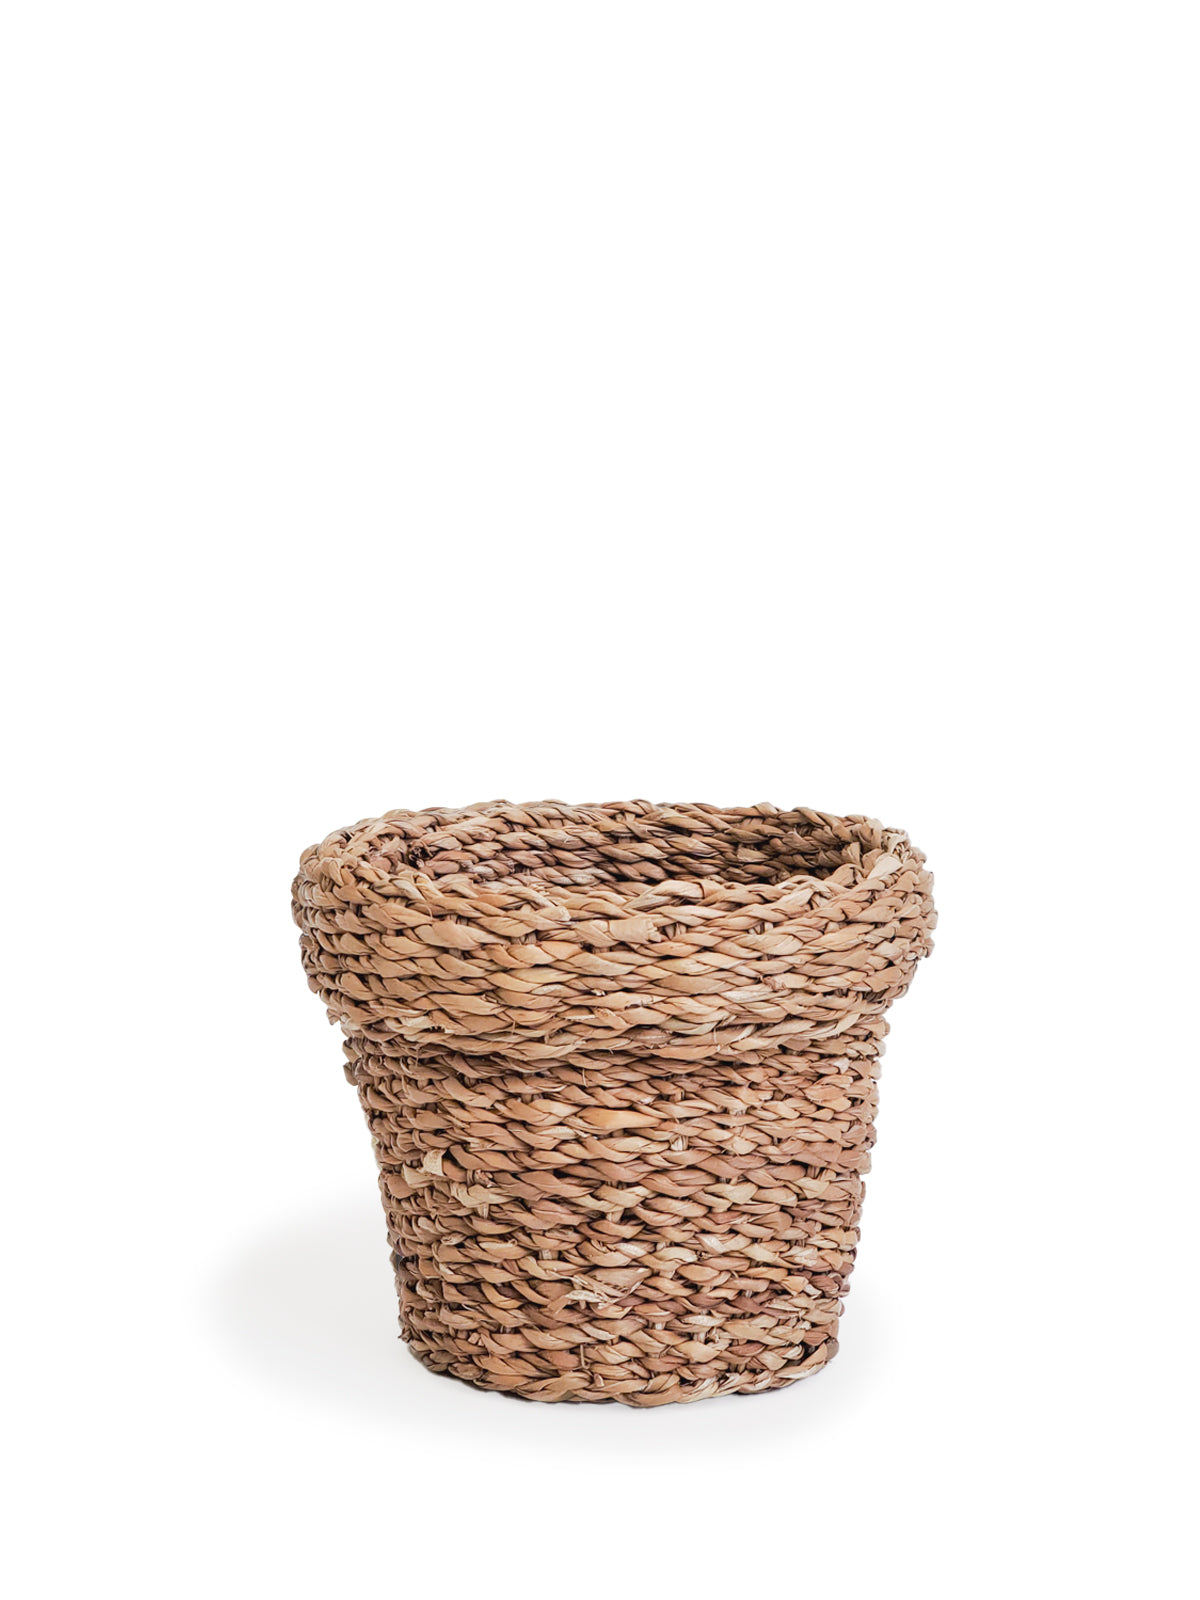 
                  
                    Savar Nesting Plant Basket by KORISSA
                  
                